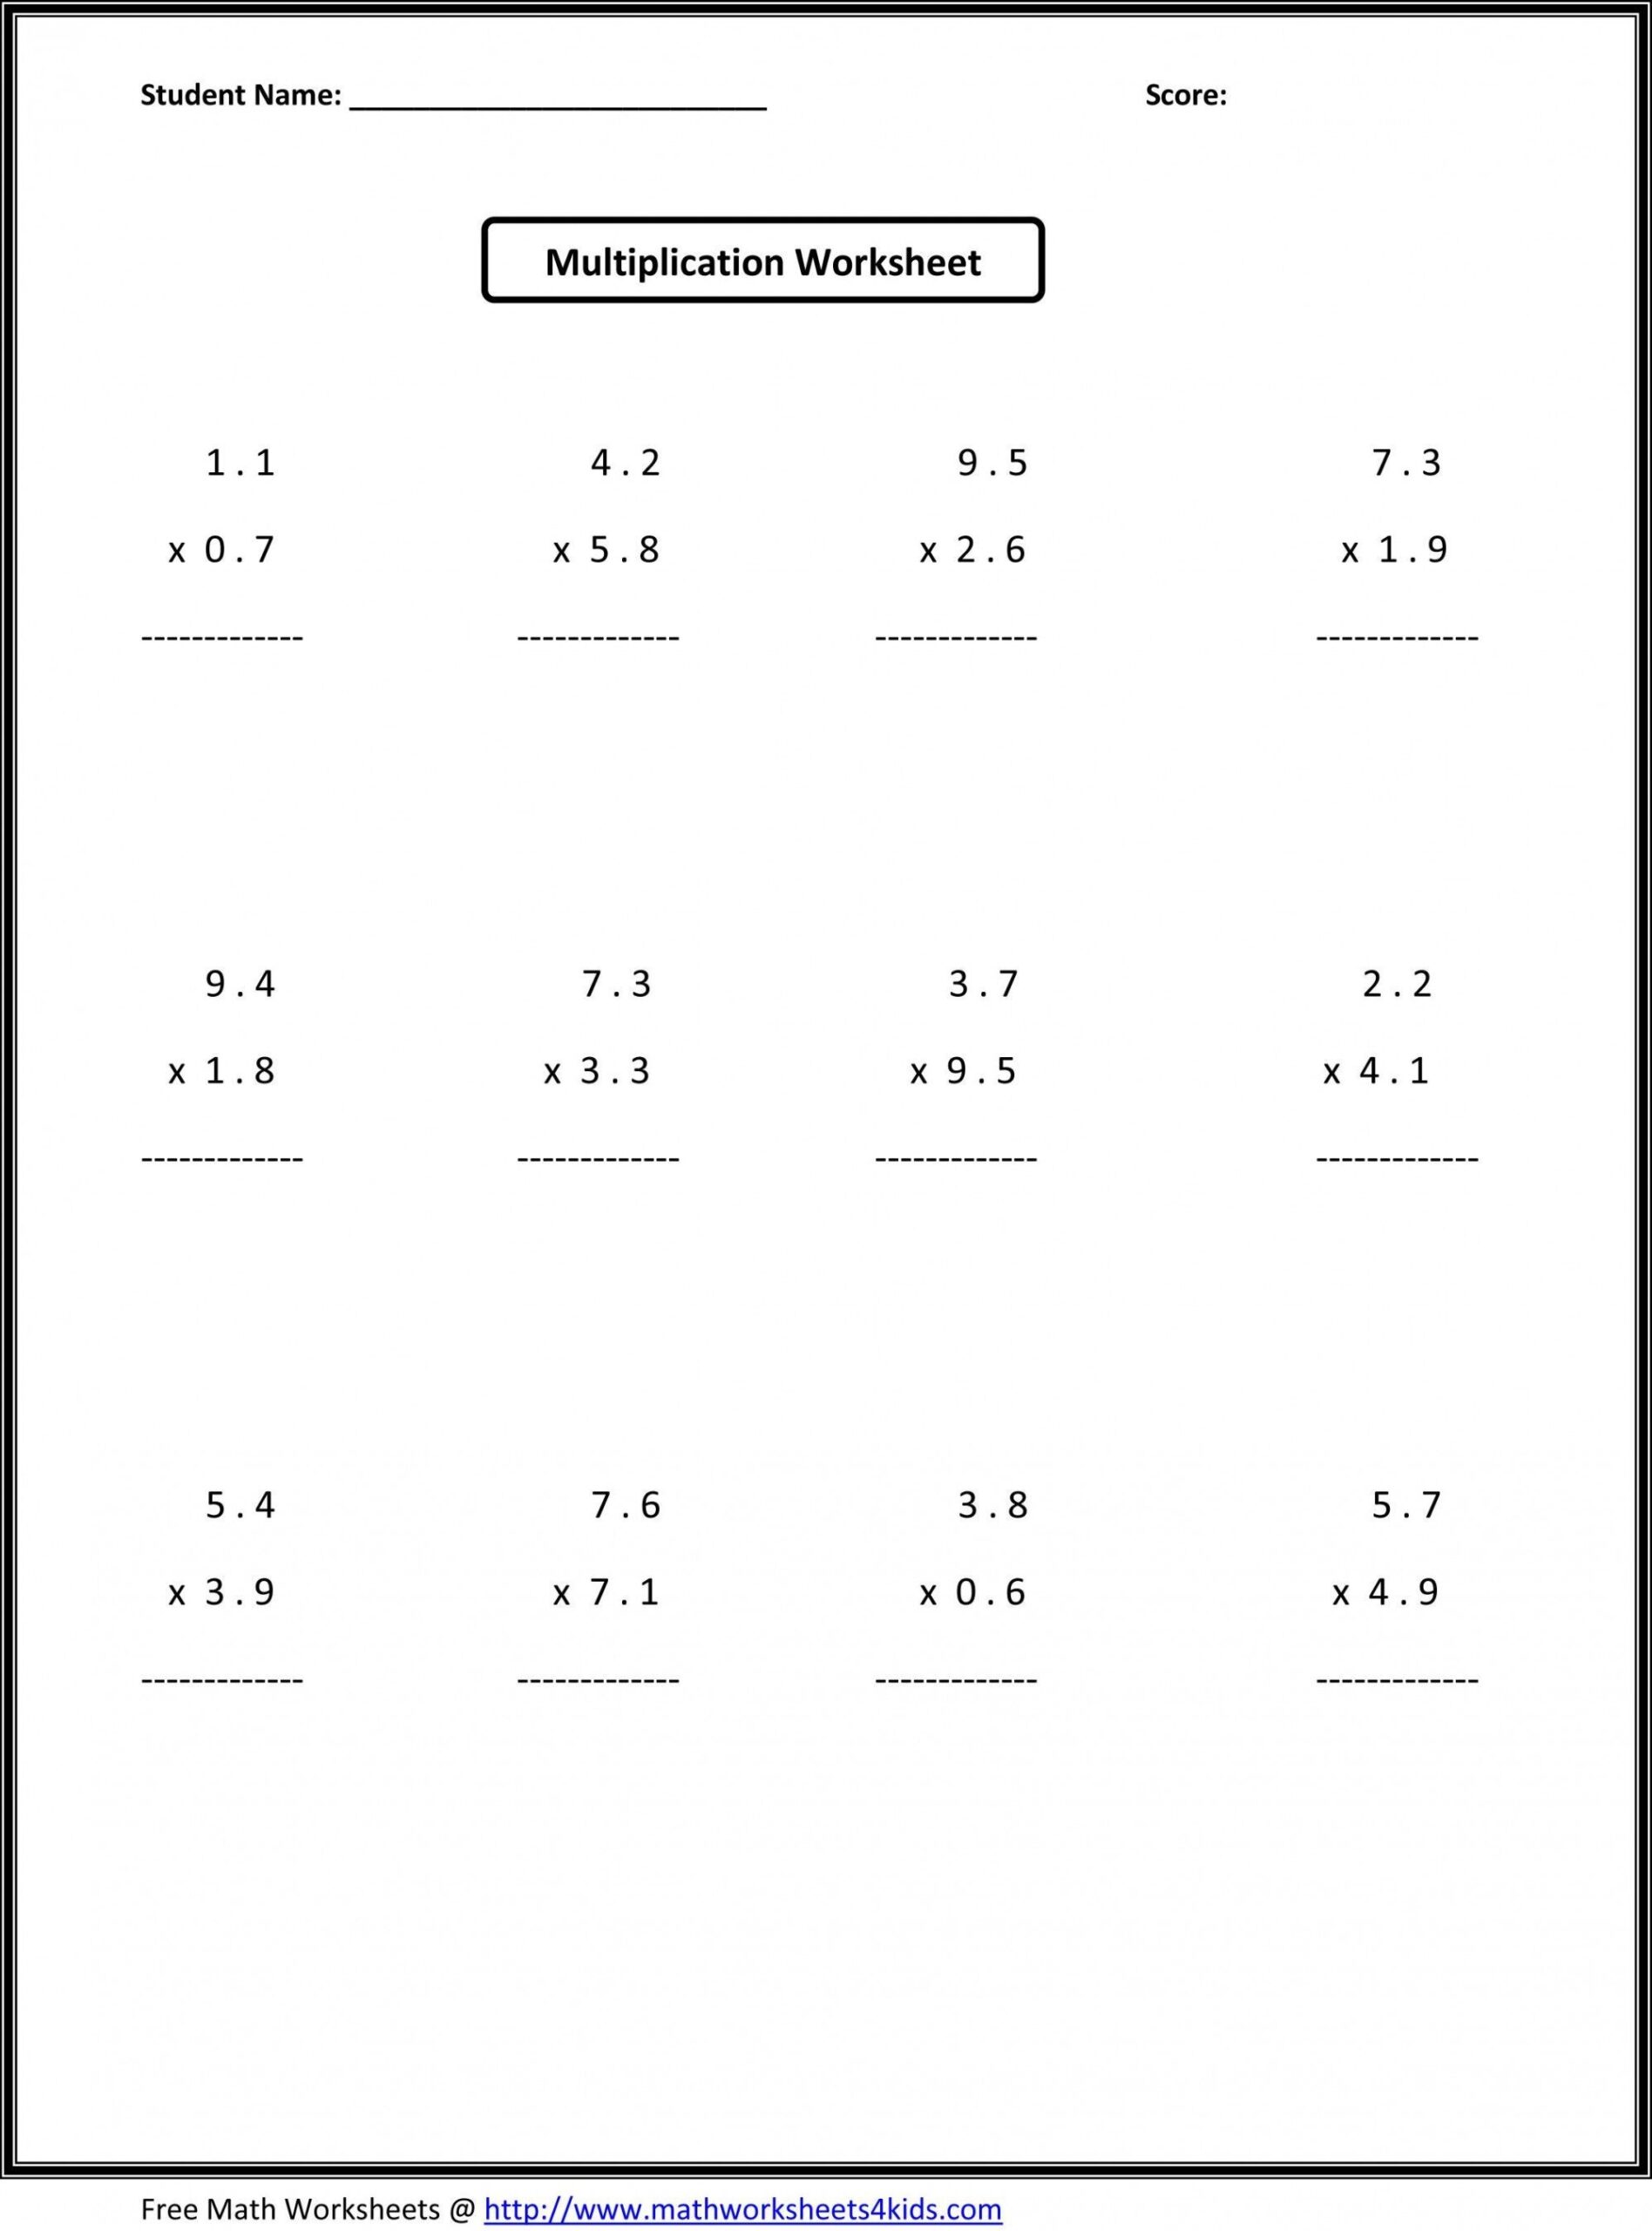 6th Grade Multiplication Worksheets 7th Grade Math Worksheets 6th Grade Worksheets Algebra Worksheets